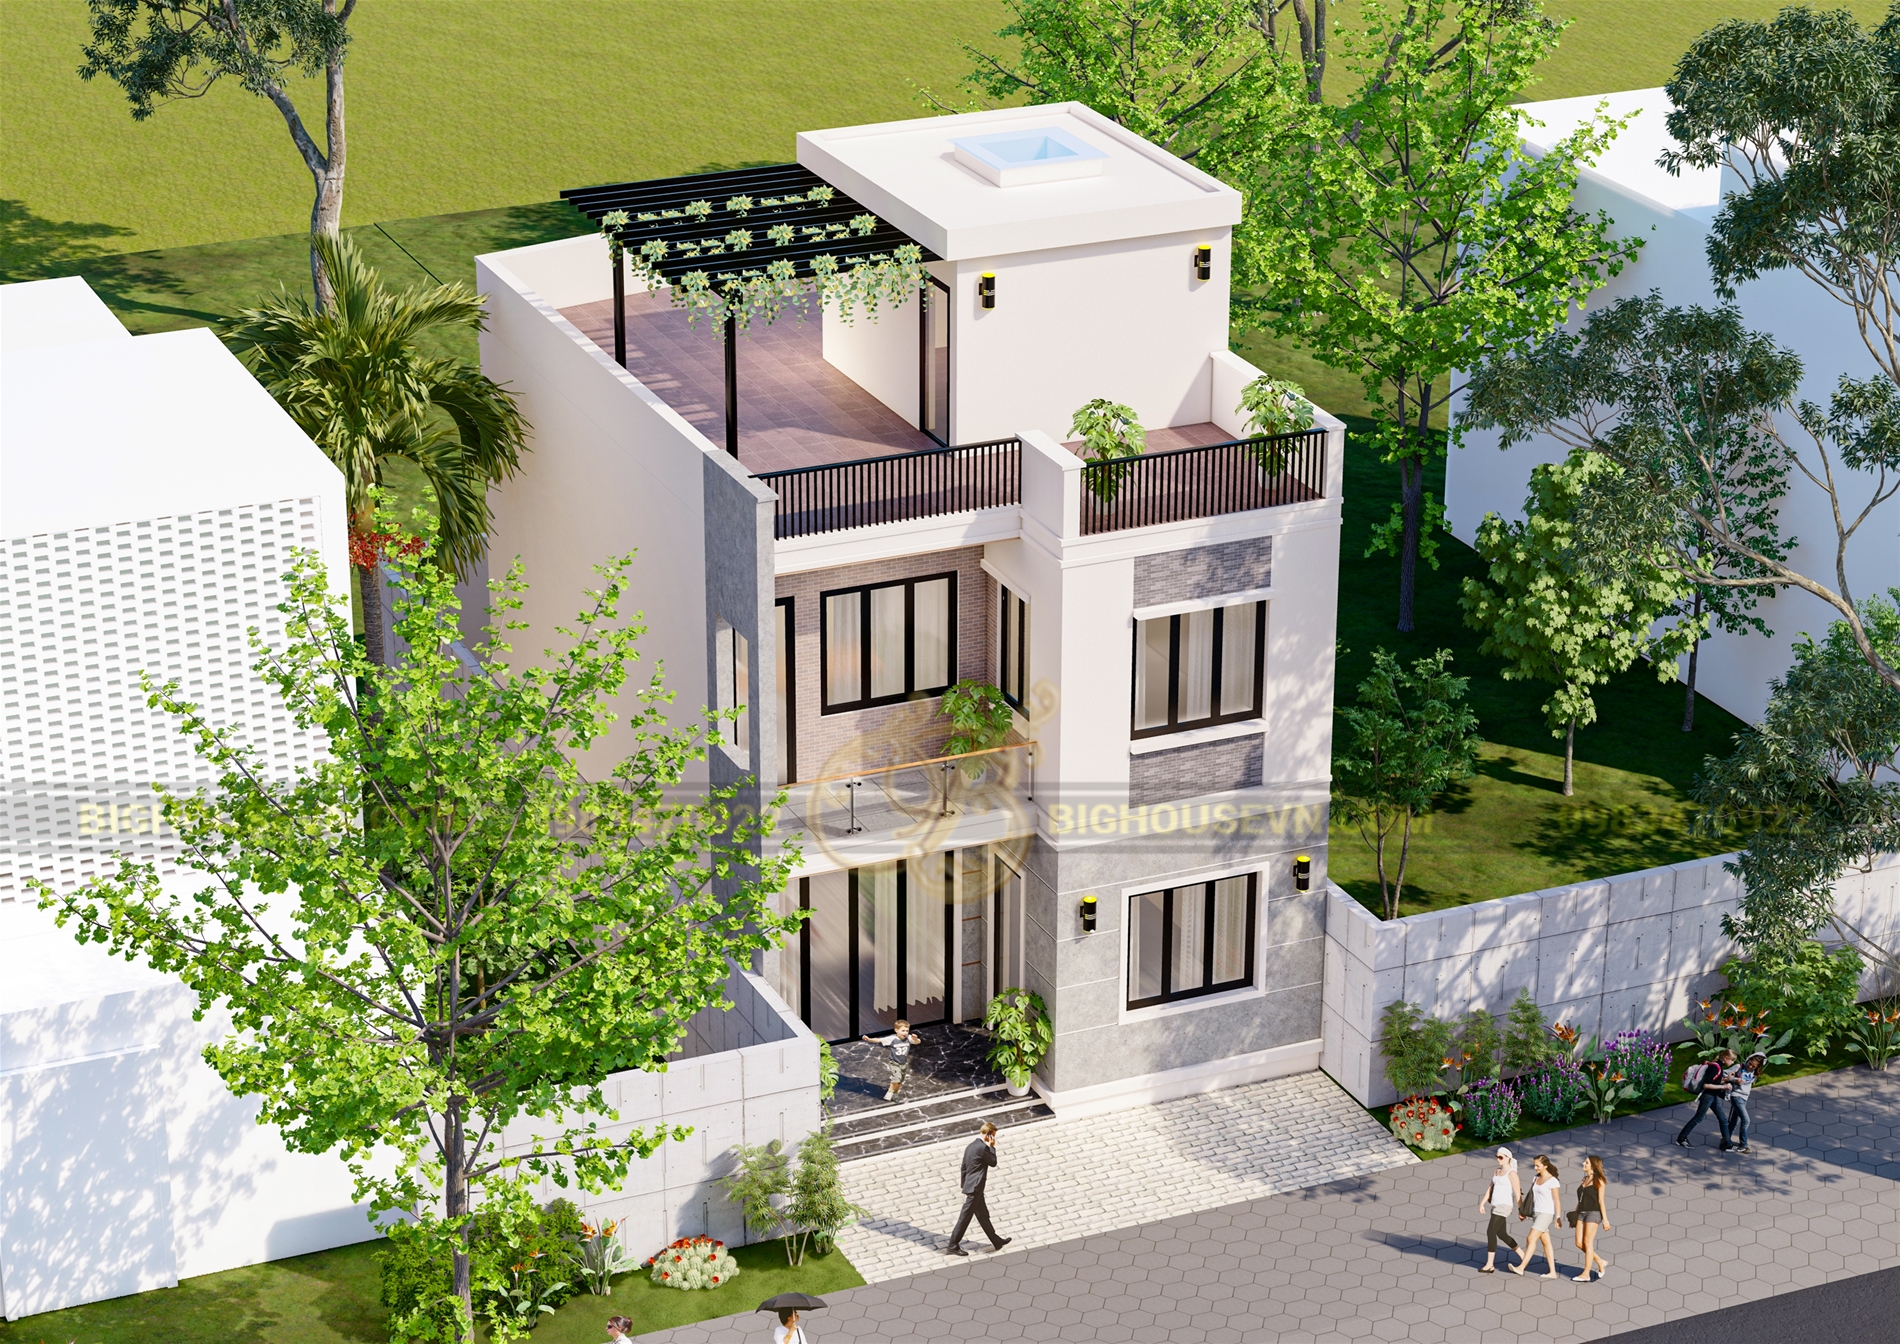 10 Mẫu thiết kế nhà 2 tầng mặt tiền 7m đẹp hiện đại 2022 - Siêu thị nội  thất số 1 Việt Nam - NoithatAlpha.com